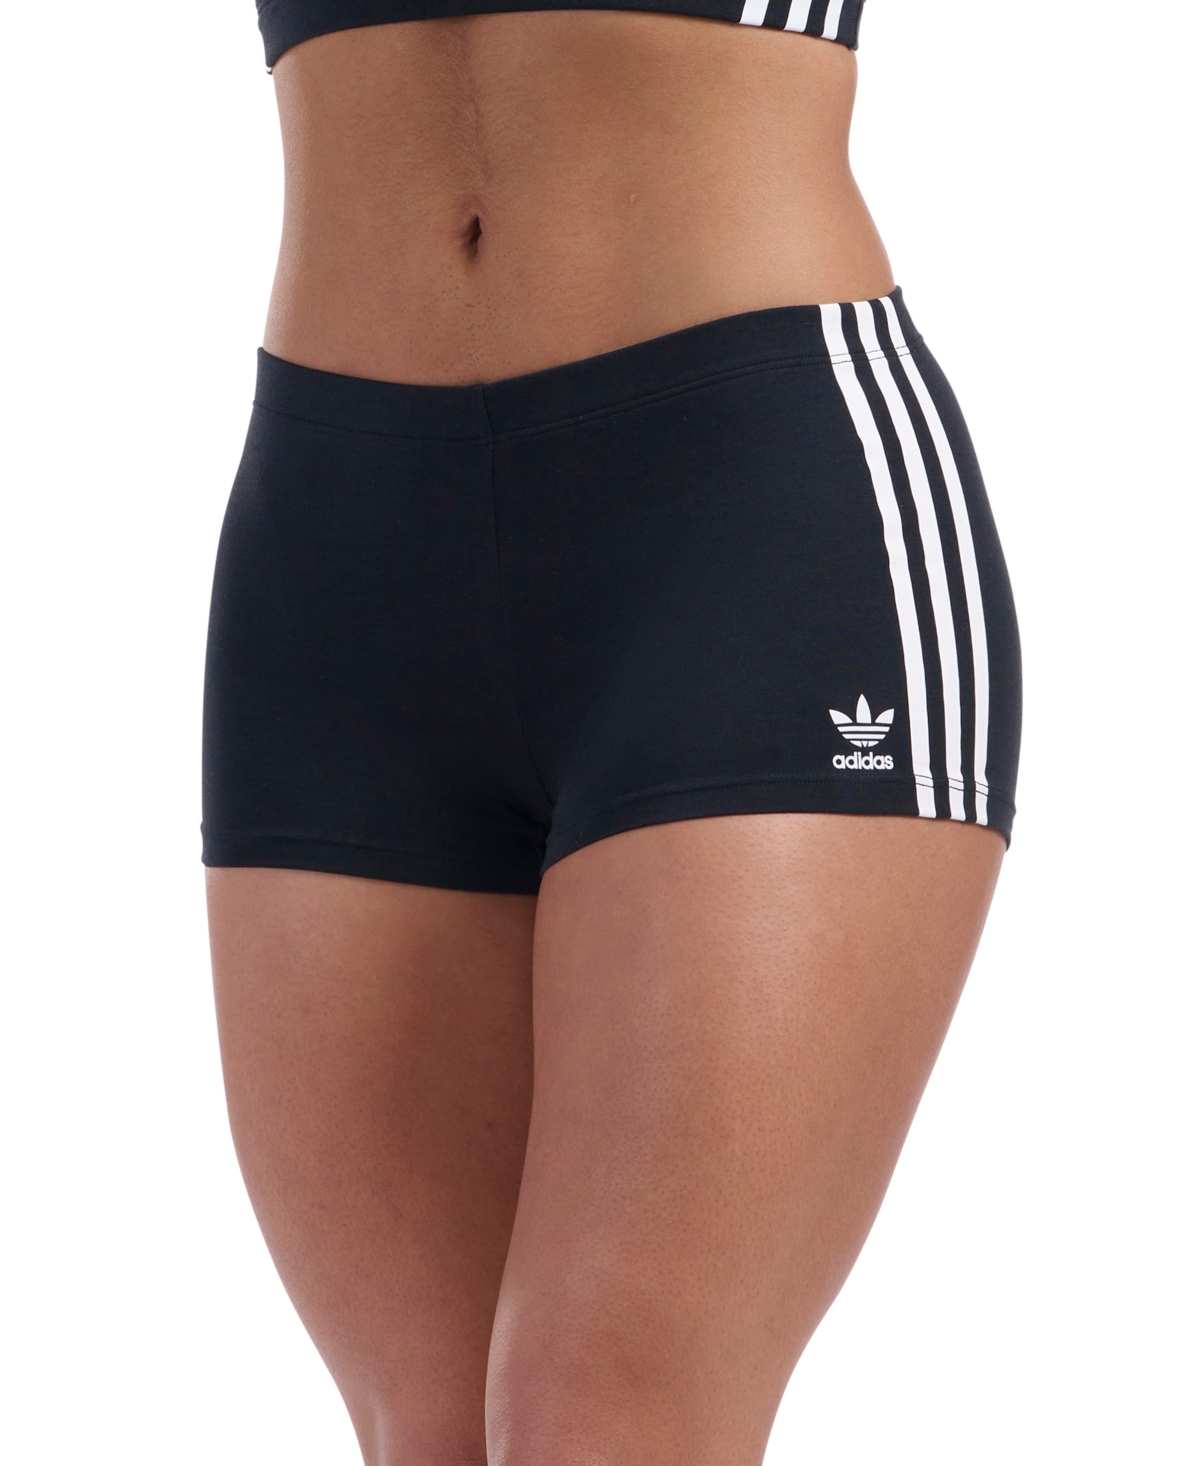 Adidas Originals Intimates Women's Adicolor Comfort Flex Cotton Short 4a3h00 In Black